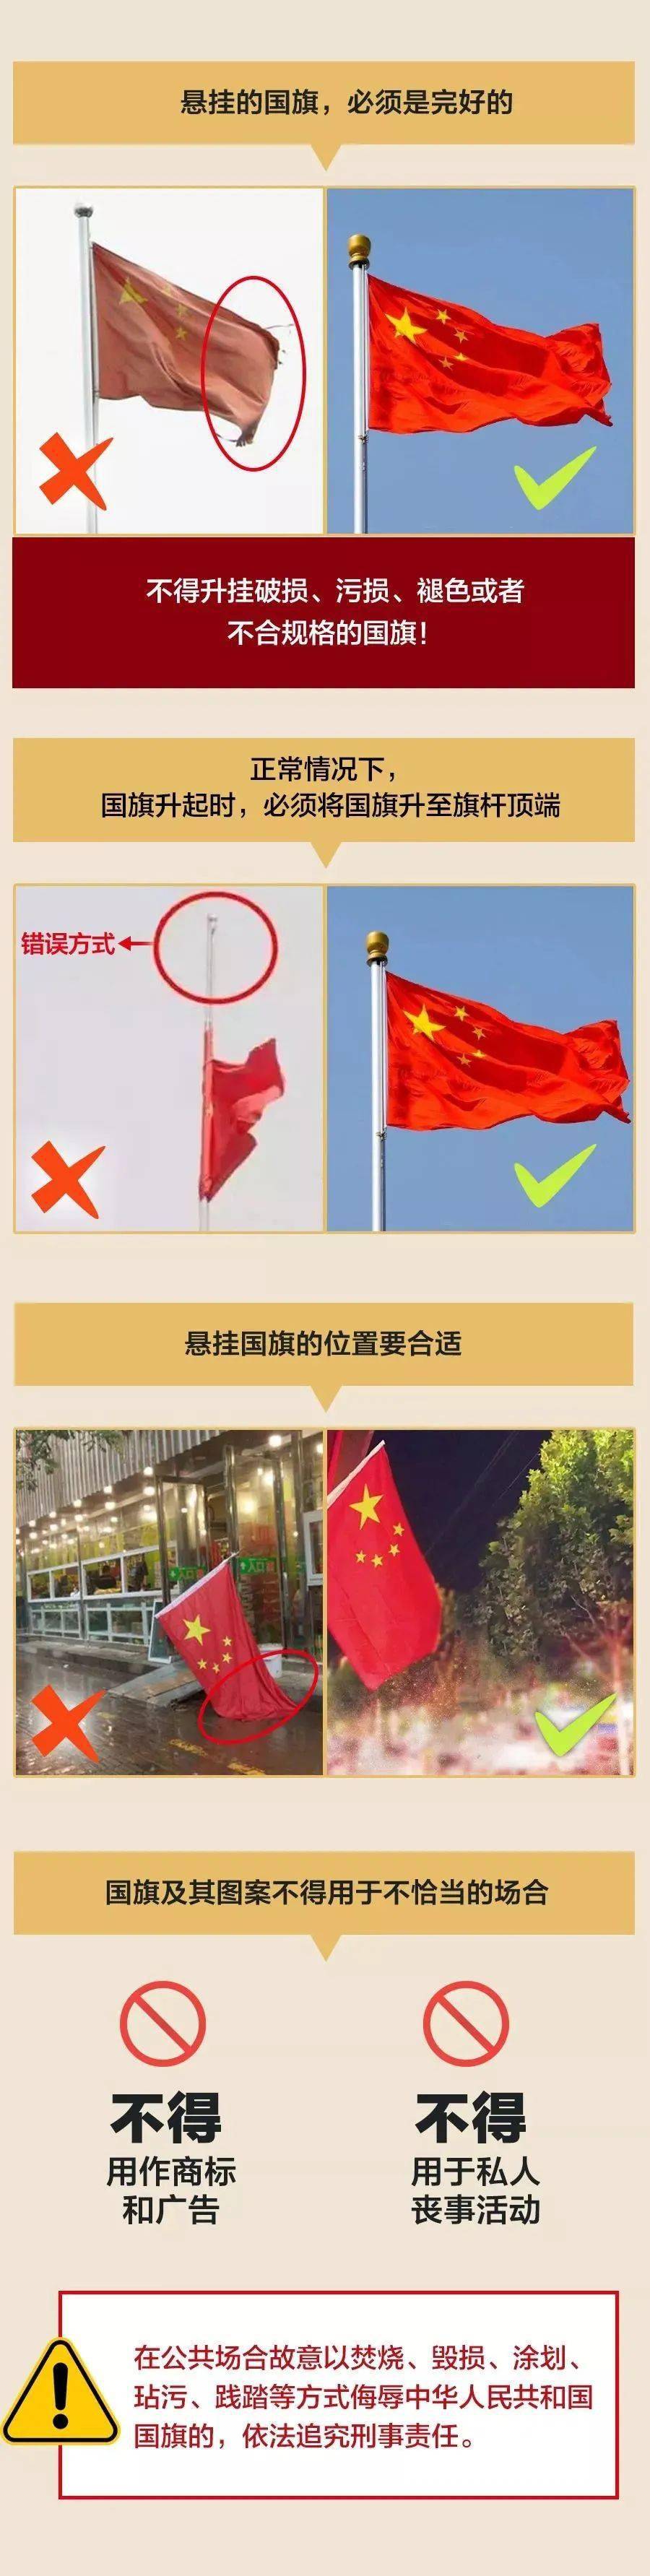 【普法宣传】《中华人民共和国国旗法》必了解!